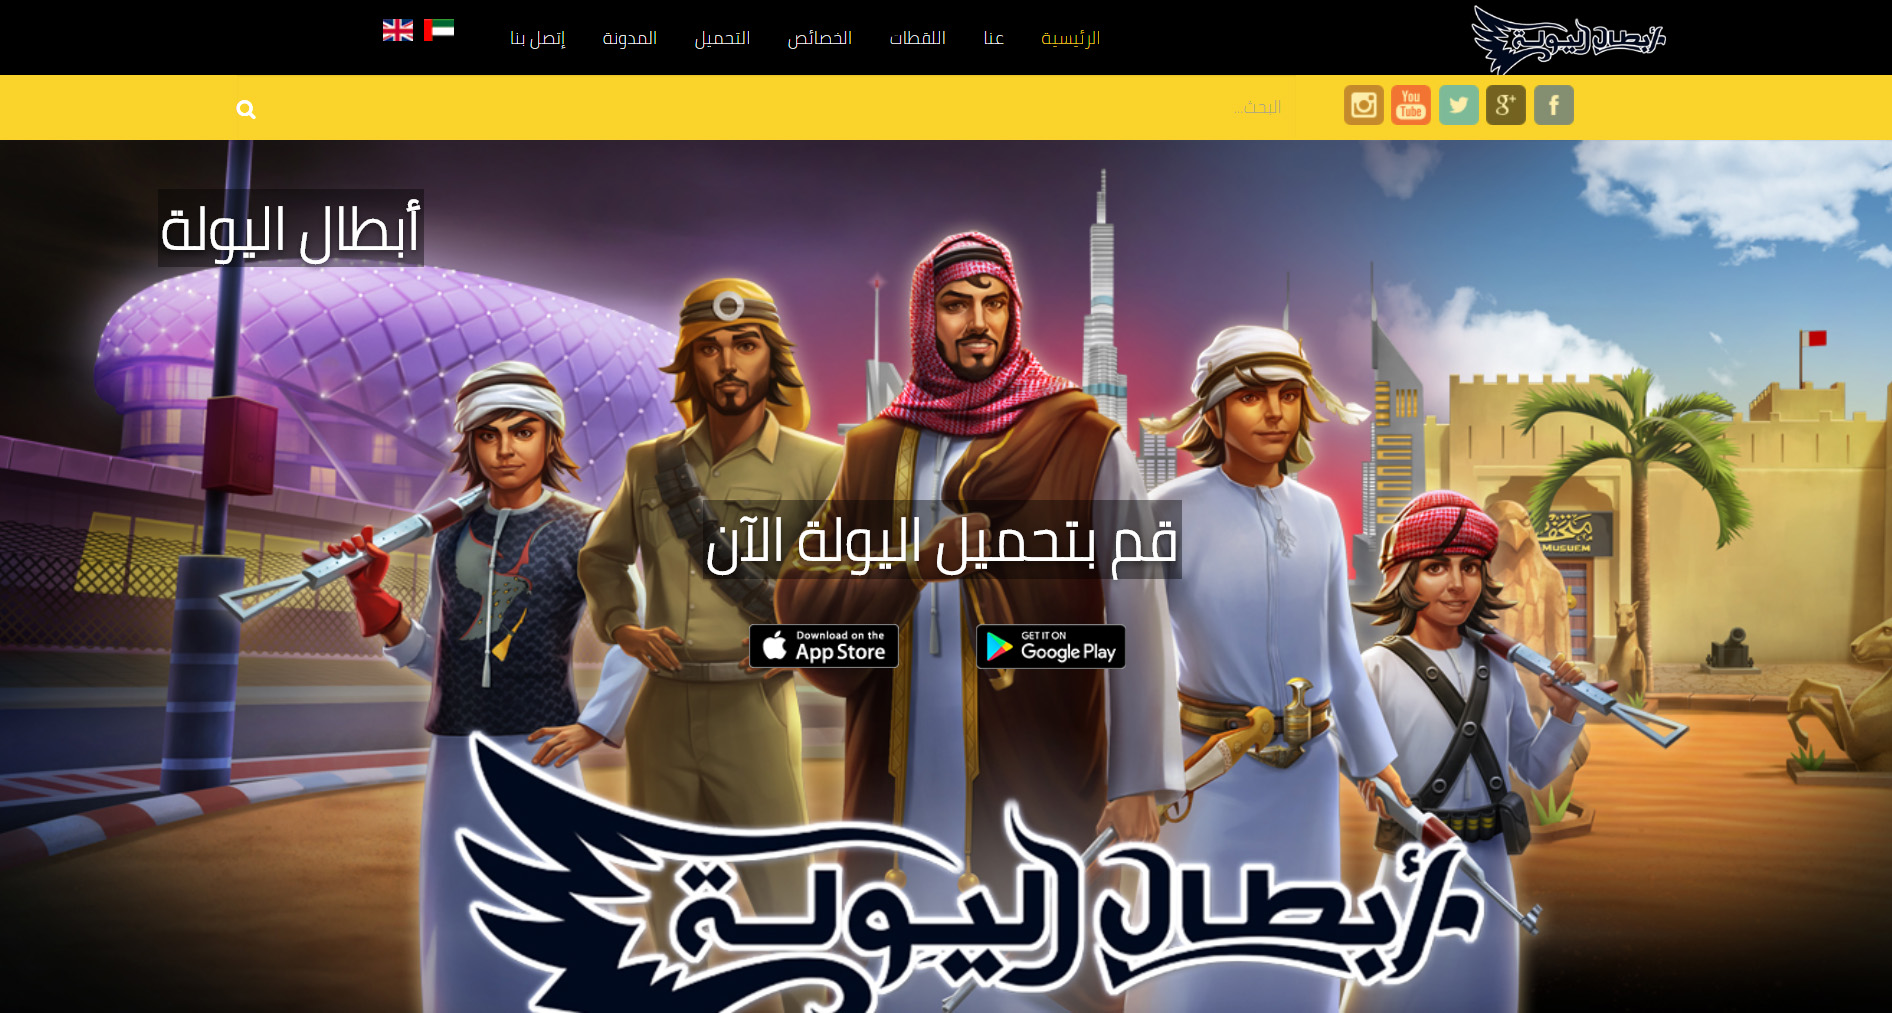 تصميم موقع الكتروني خاص بلعبة أبطال اليولة فى الرياض السعودية